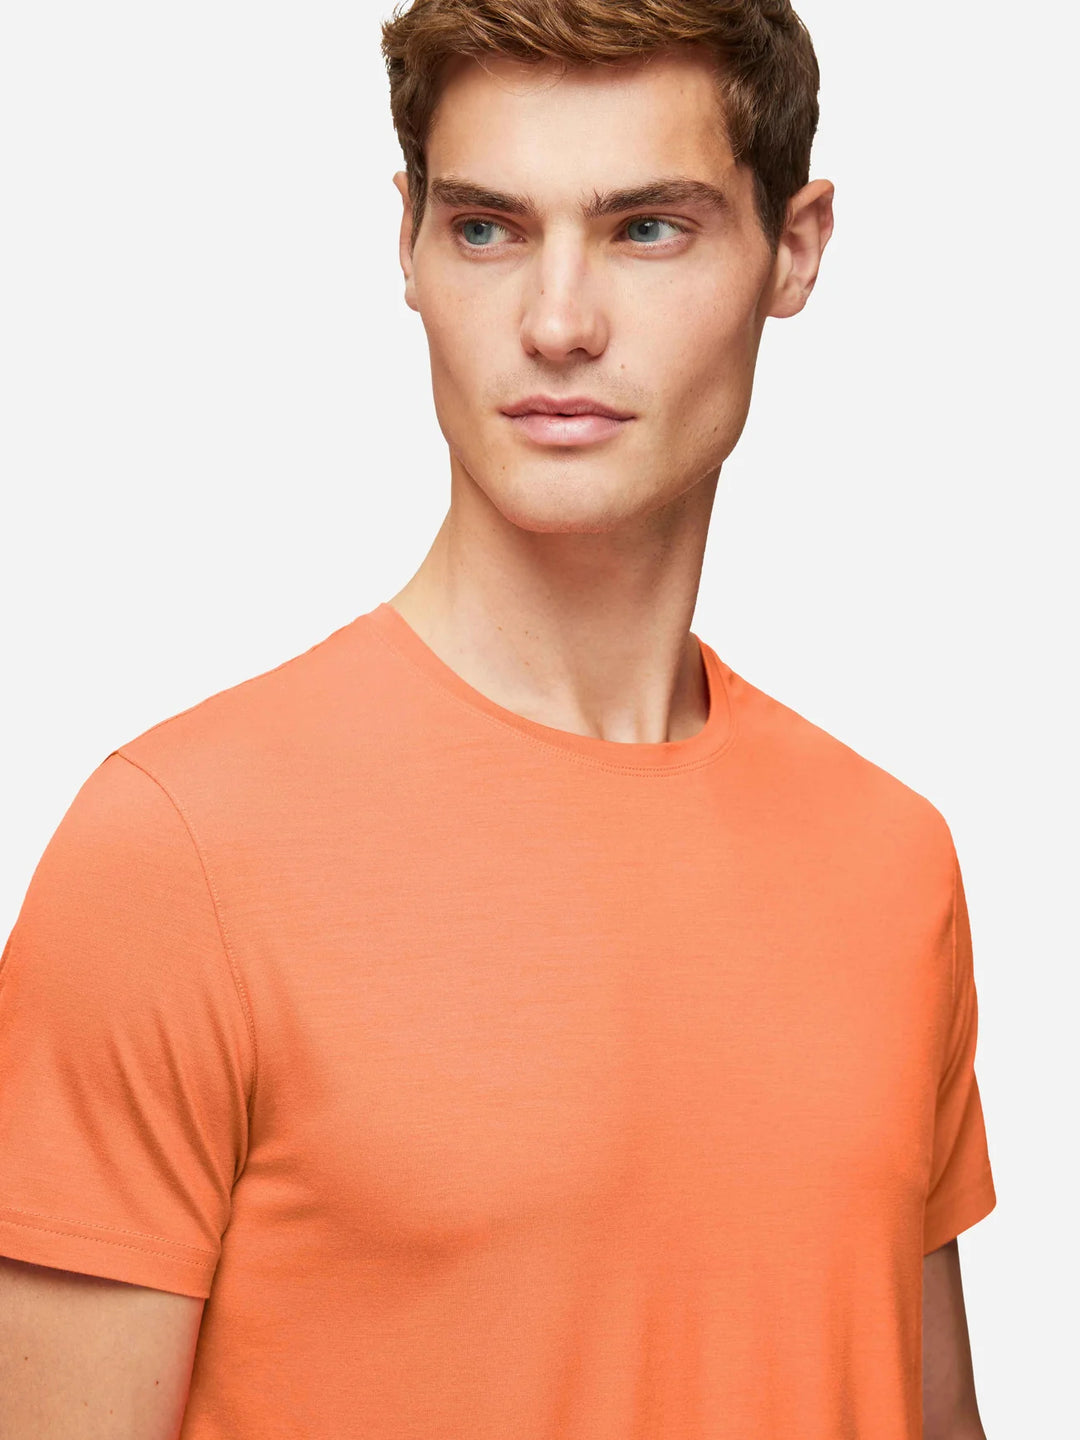 Derek Rose Basel T-Shirt in Orange